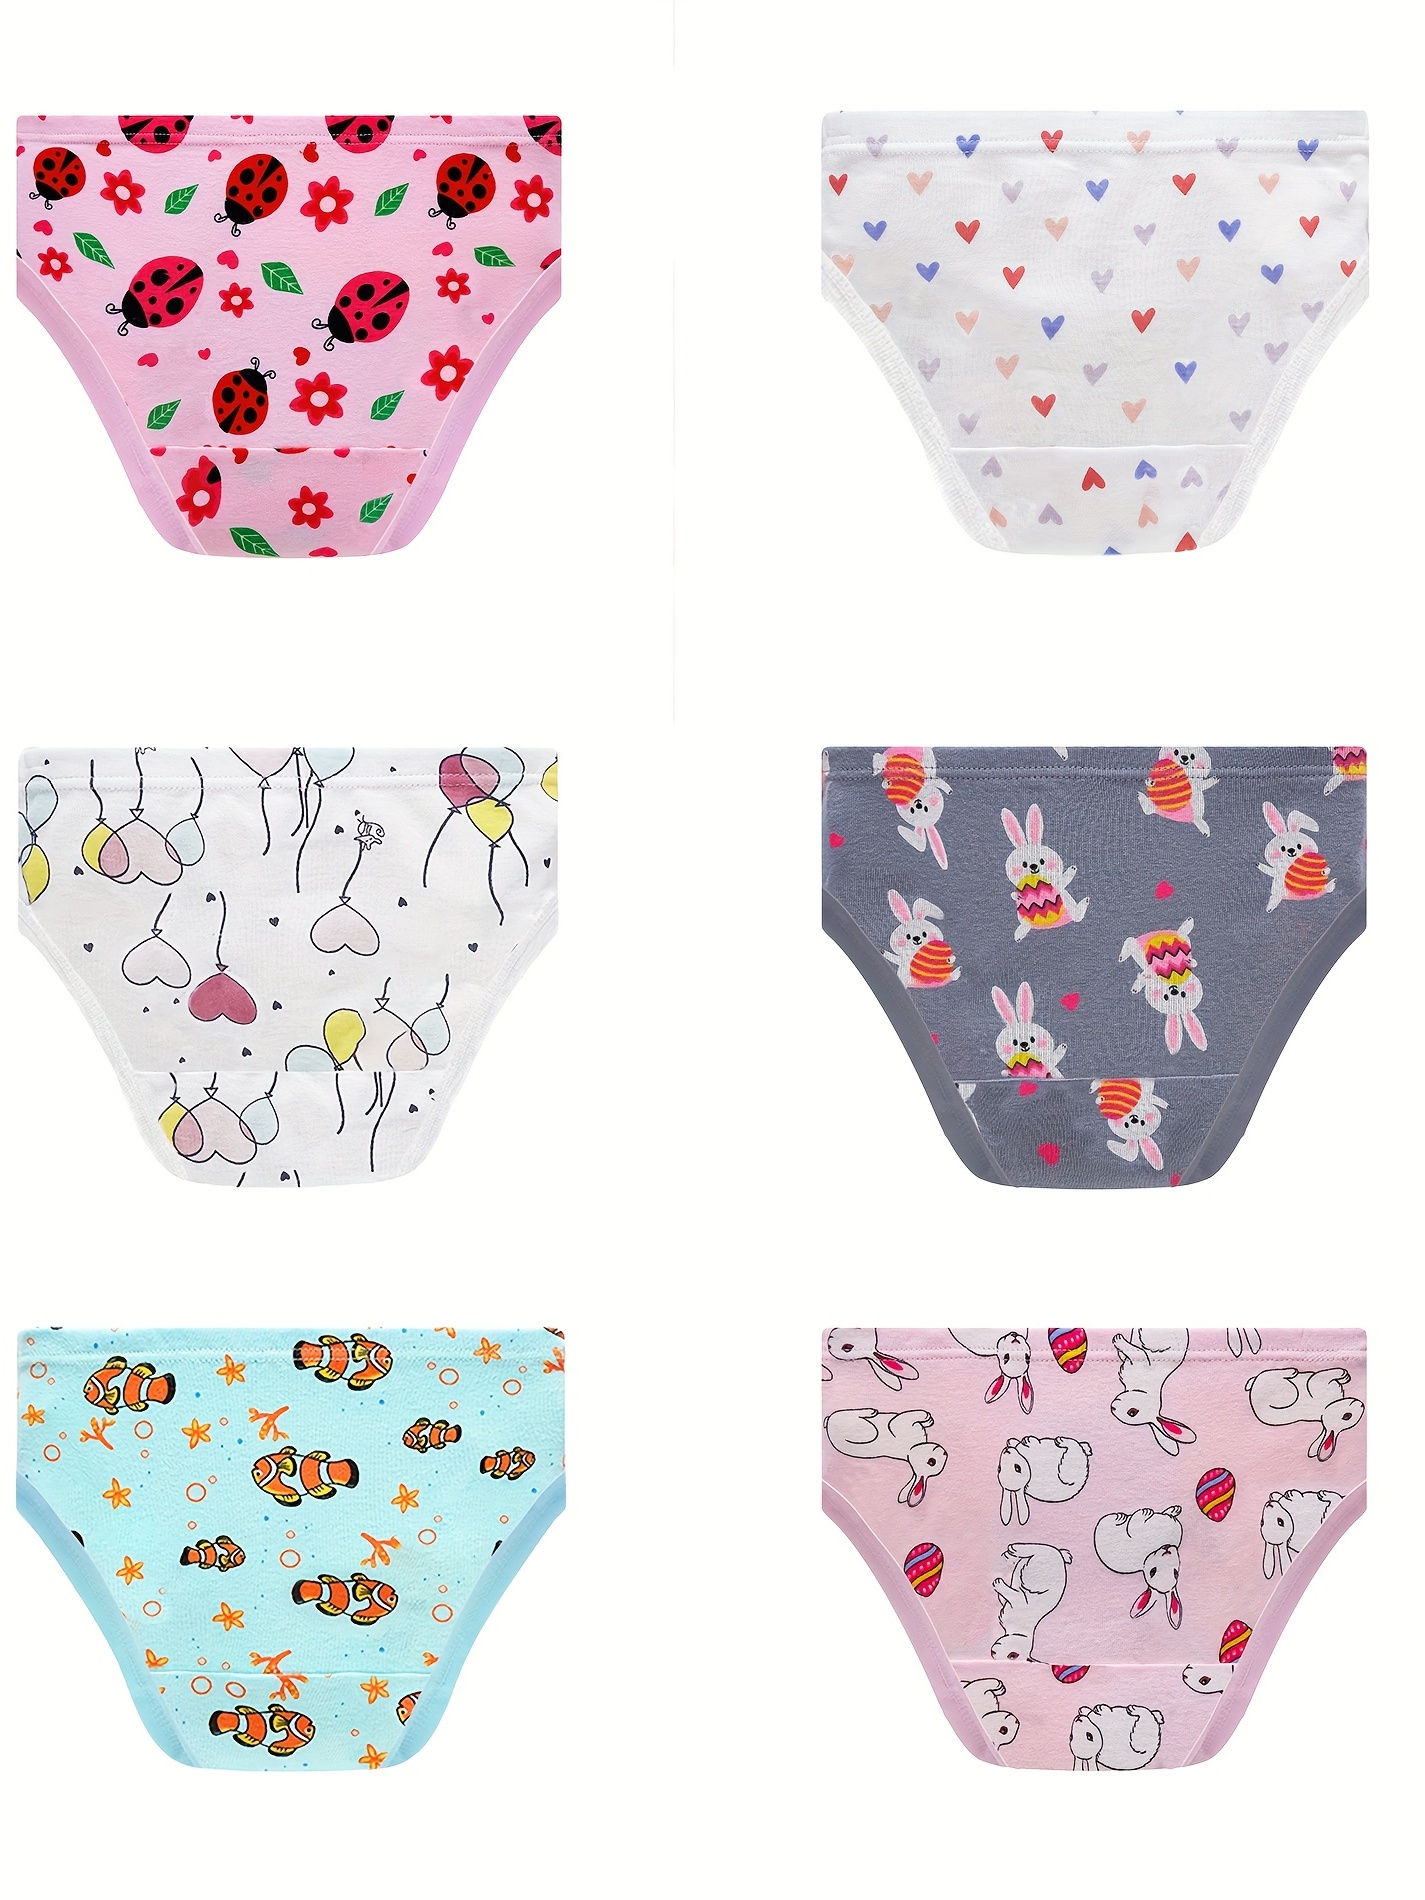  KikizYe Baby Soft Cotton underwear Little Girls